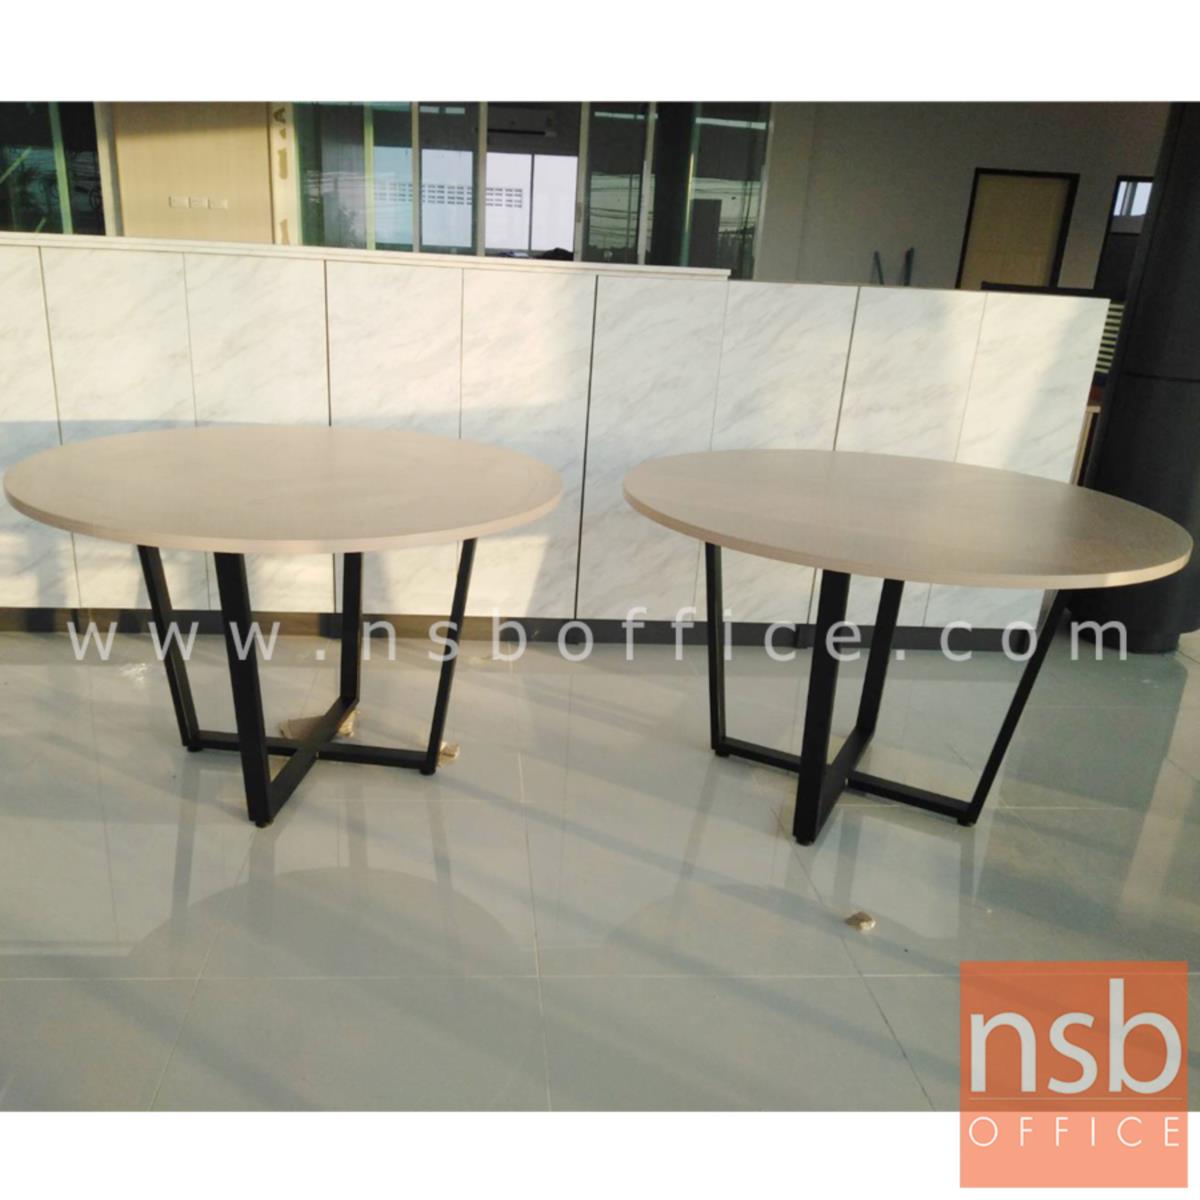 โต๊ะประชุมทรงวงกลม รุ่น Peppers 4, 6 ที่นั่ง ขนาด 120Di, 150Di cm.  ขาเหล็กทรงแจกัน